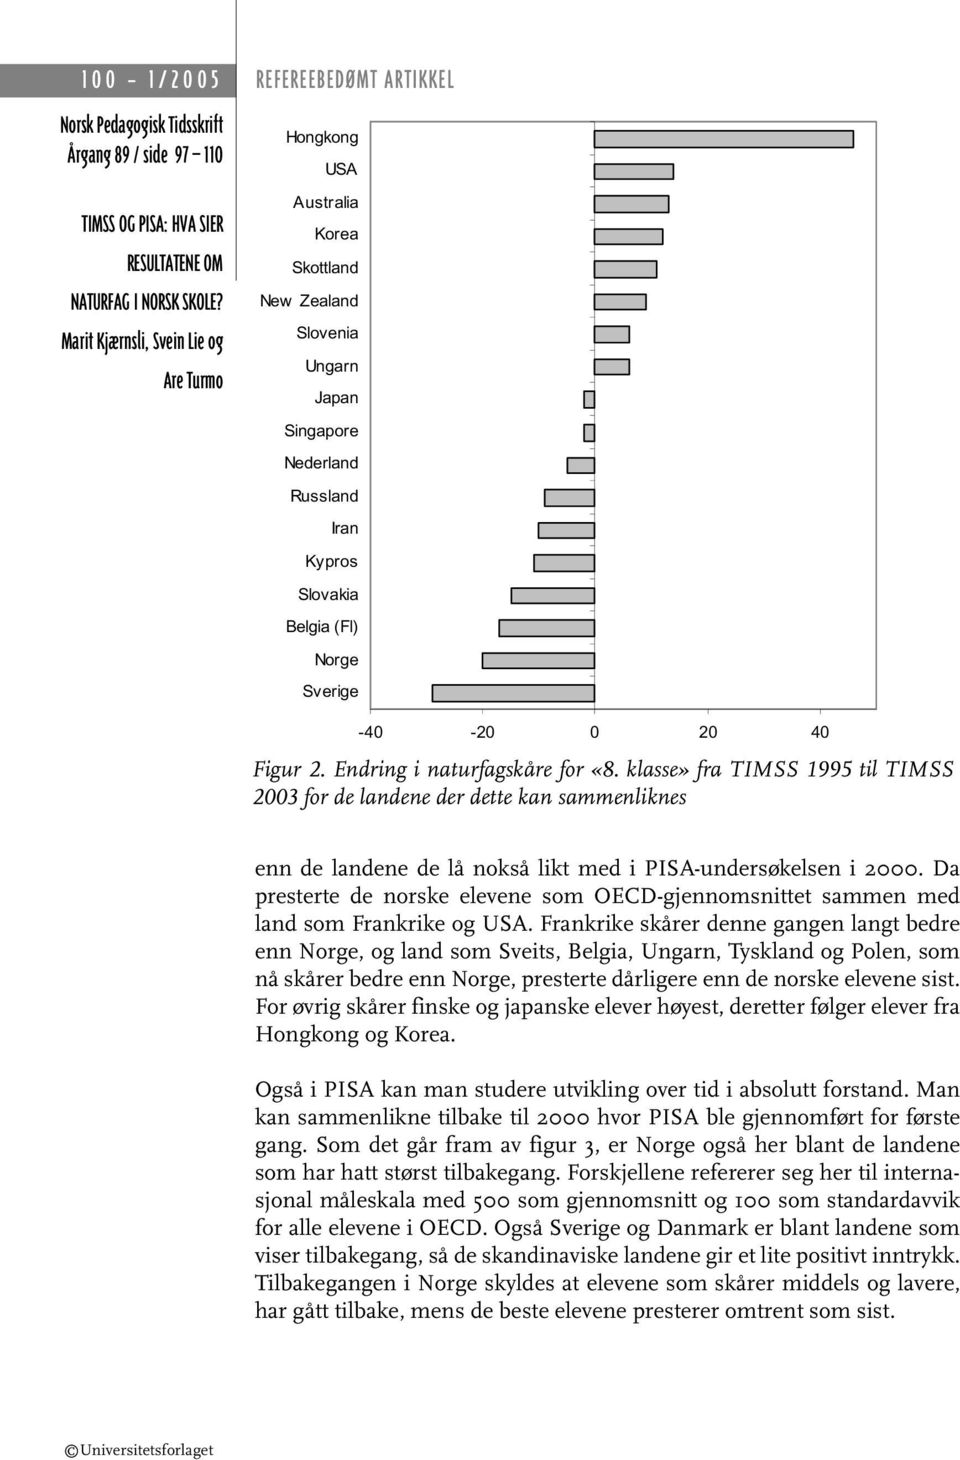 Da presterte de norske elevene som OECD-gjennomsnittet sammen med land som Frankrike og USA.